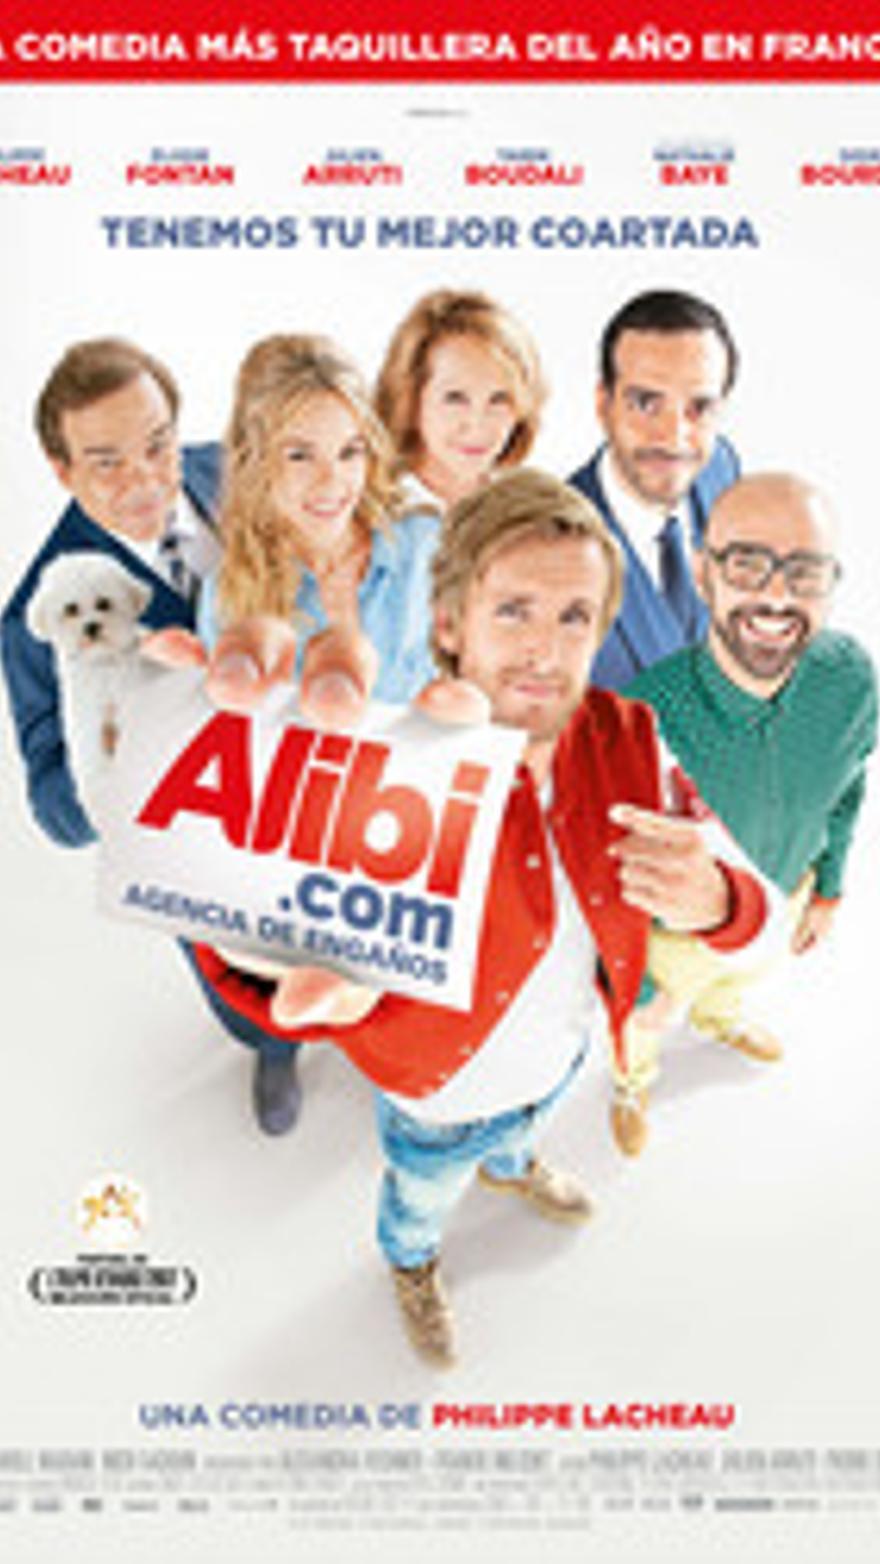 Alibi.com, agencia de engaños